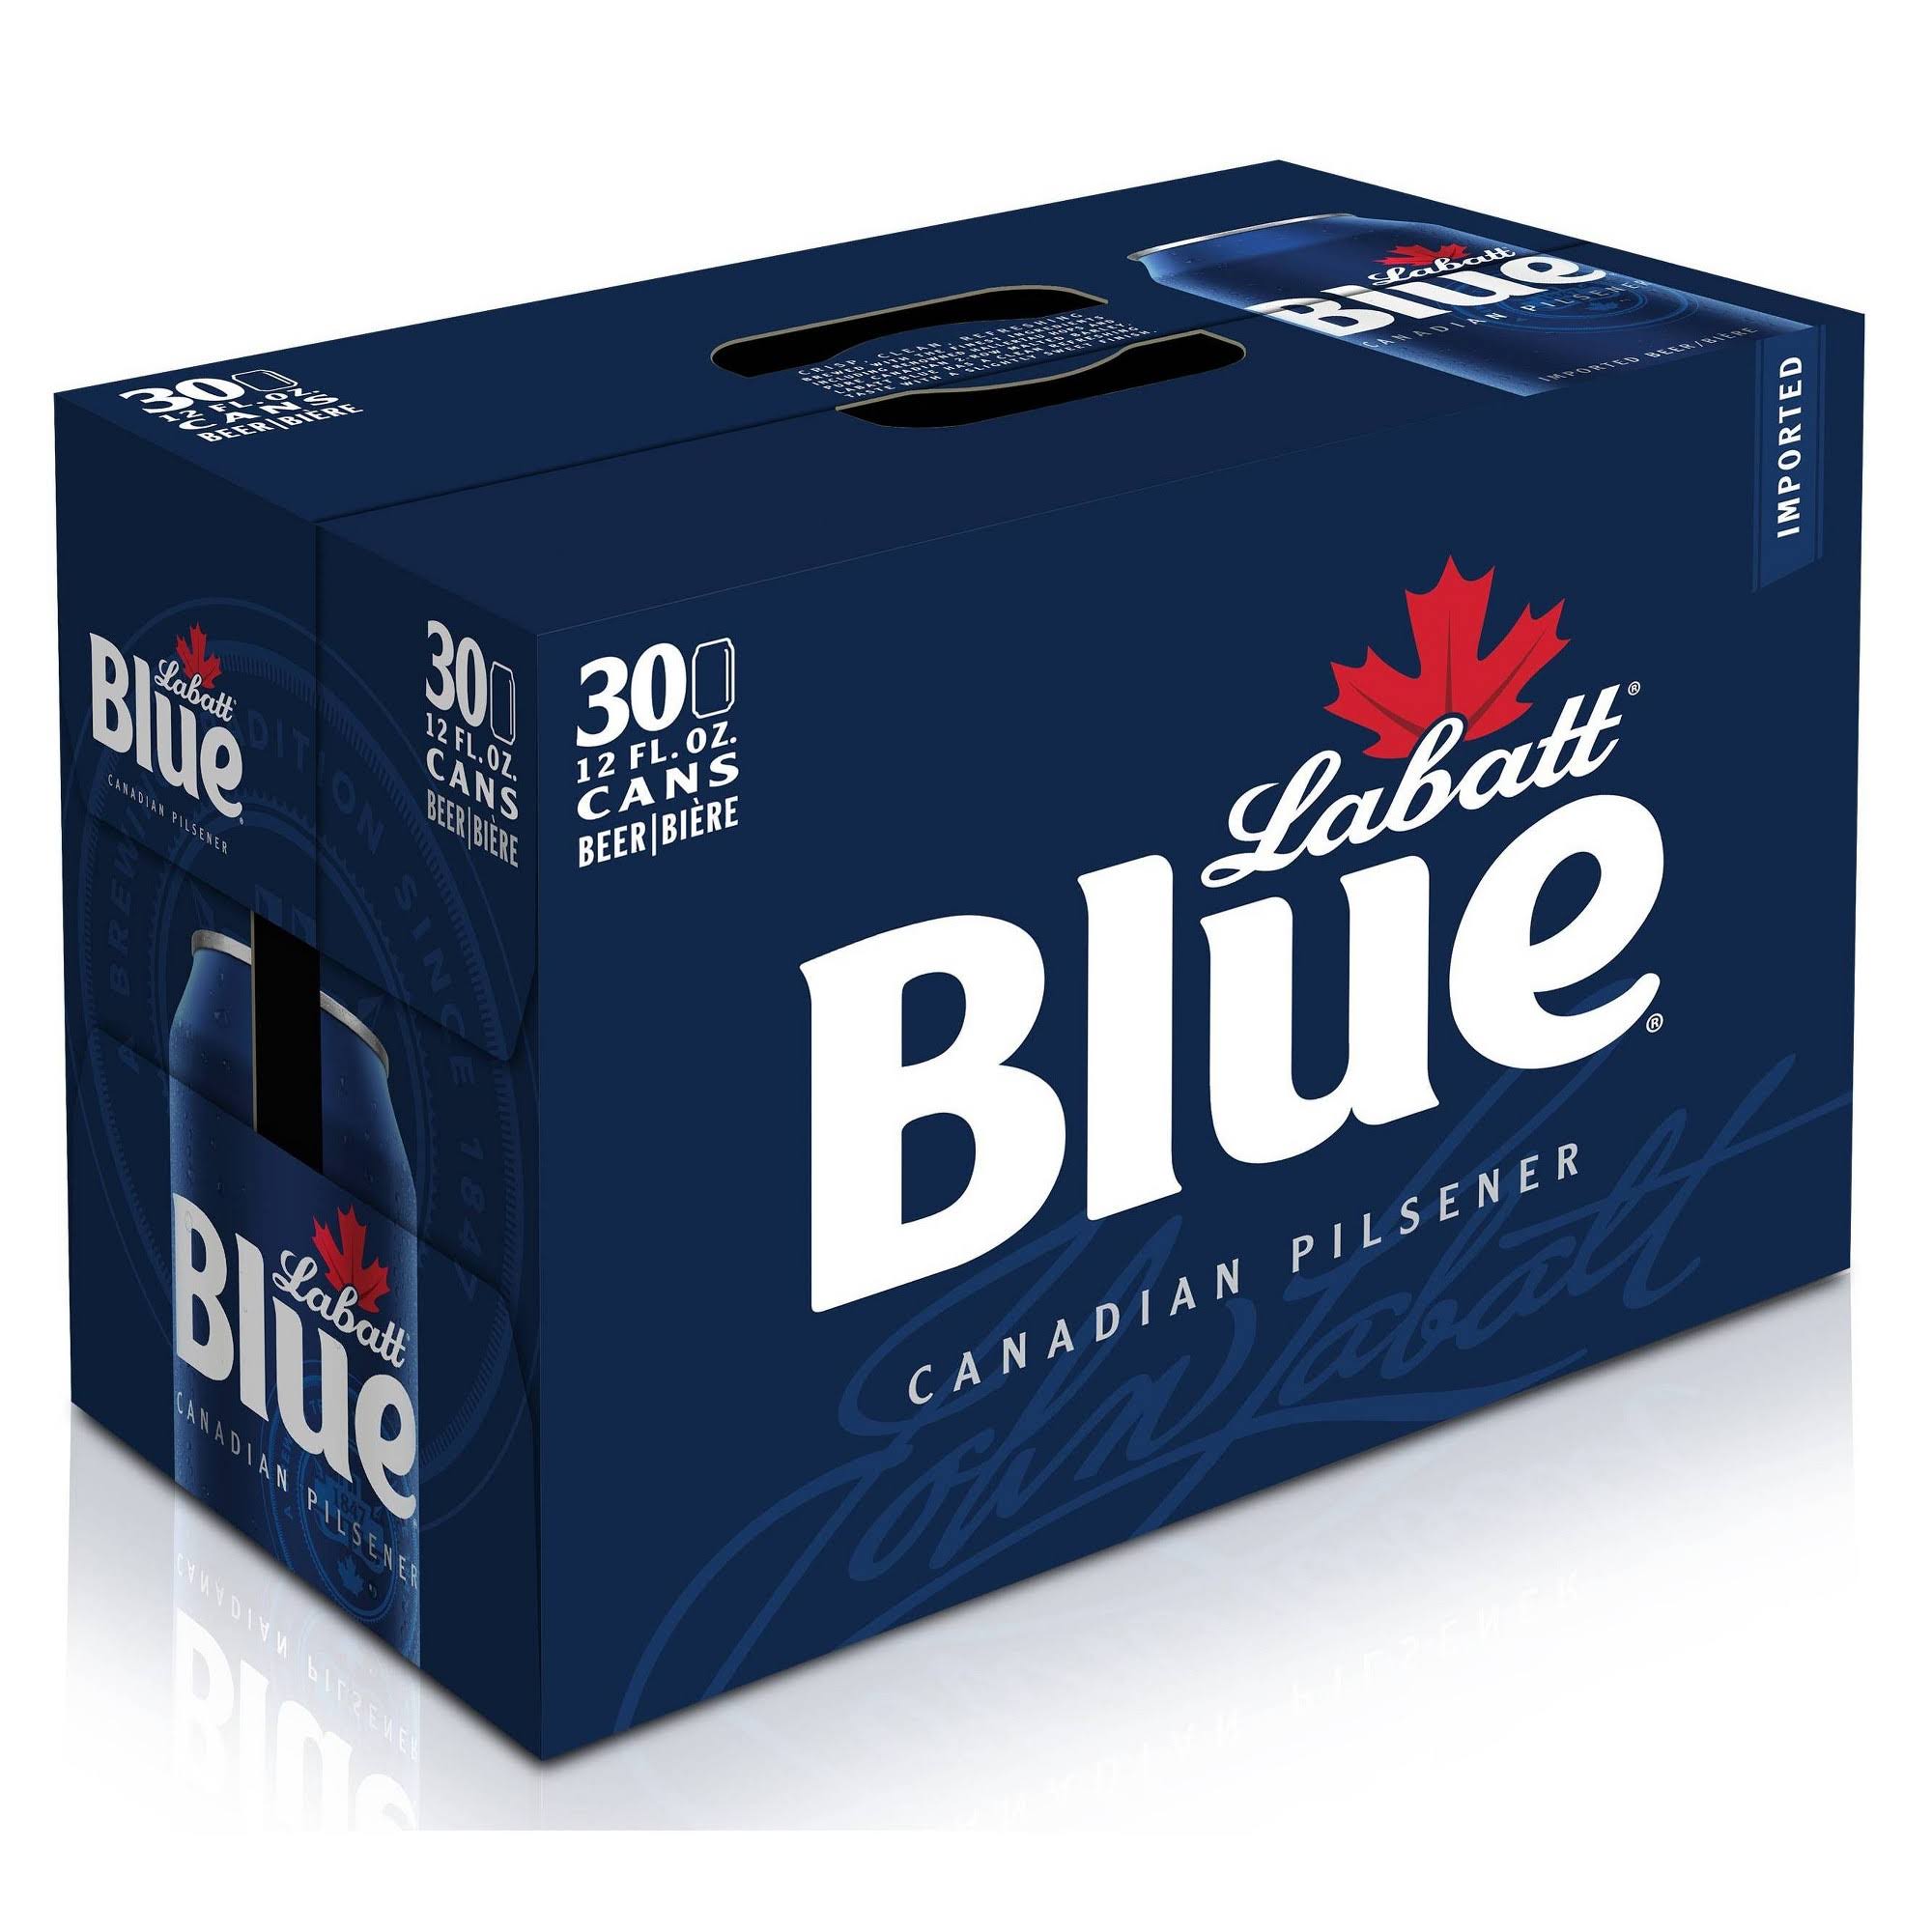 Labatt Blue Canadian Pilsener Beer - 12oz, 30 Count